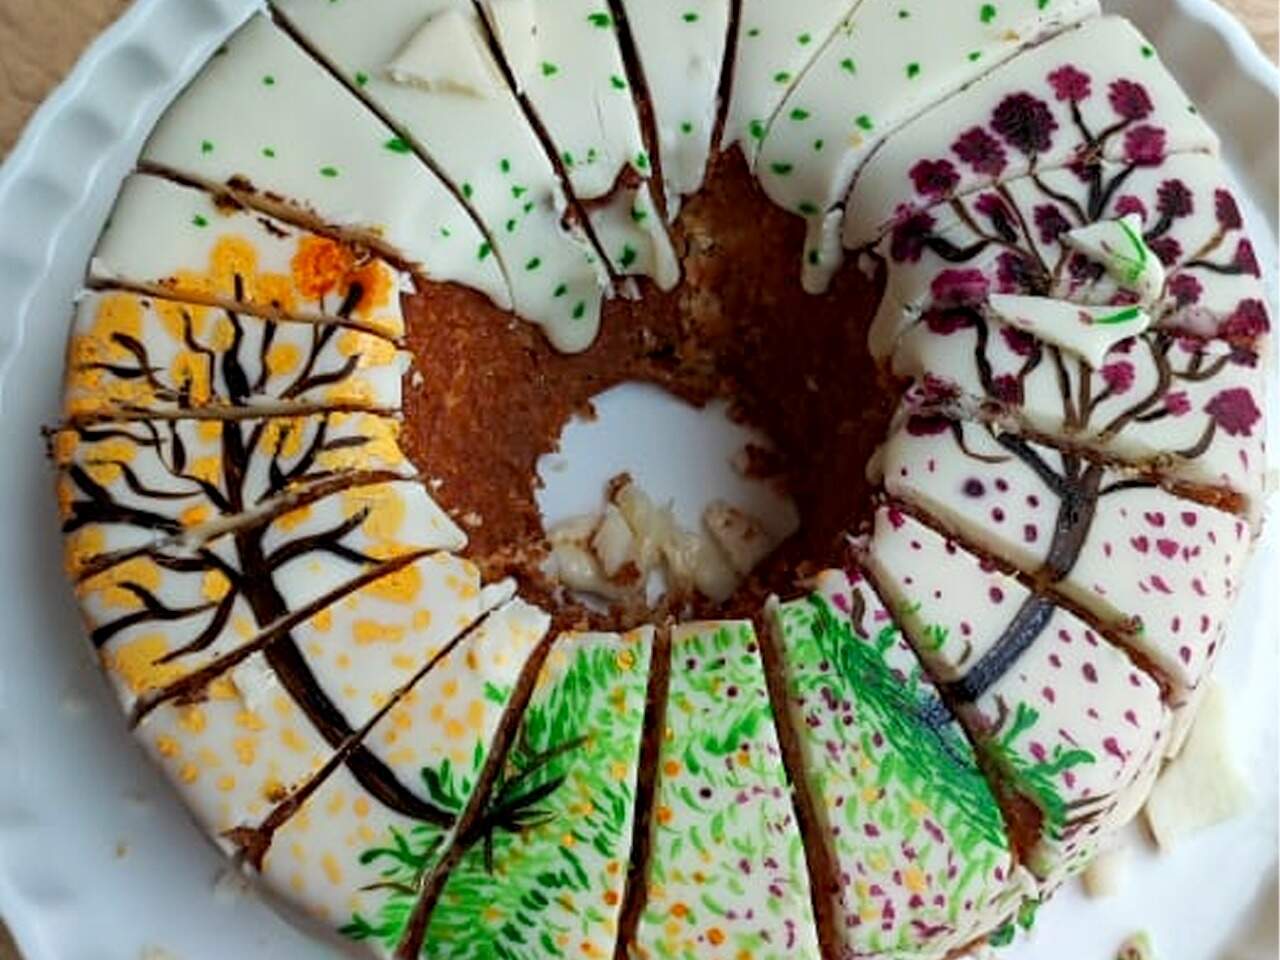 Com toque artístico, feirante faz bolos simples parecerem quadros